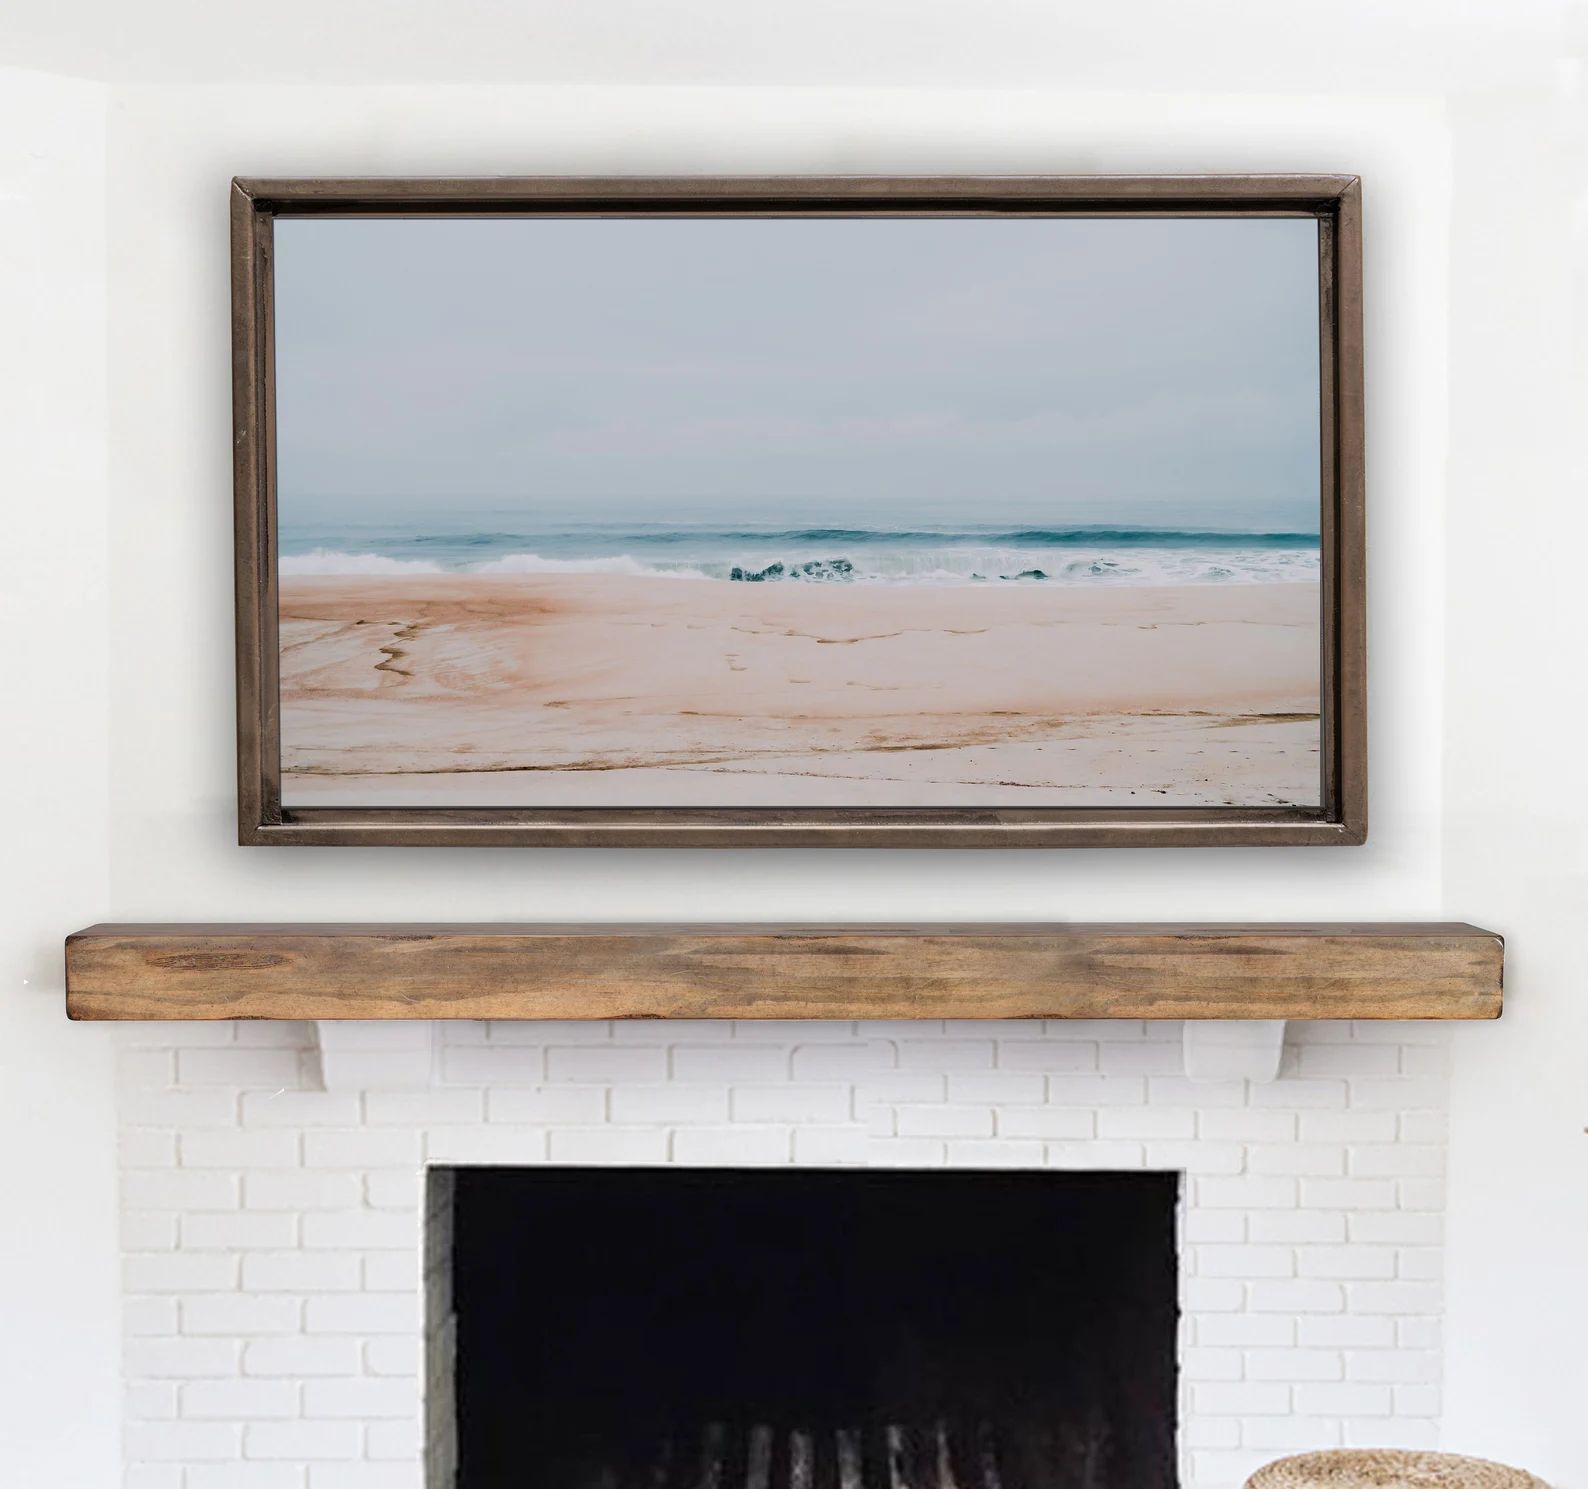 Samsung Frame TV Art. Costa Nova Beach Portugal. Ocean Sea | Etsy | Etsy (US)